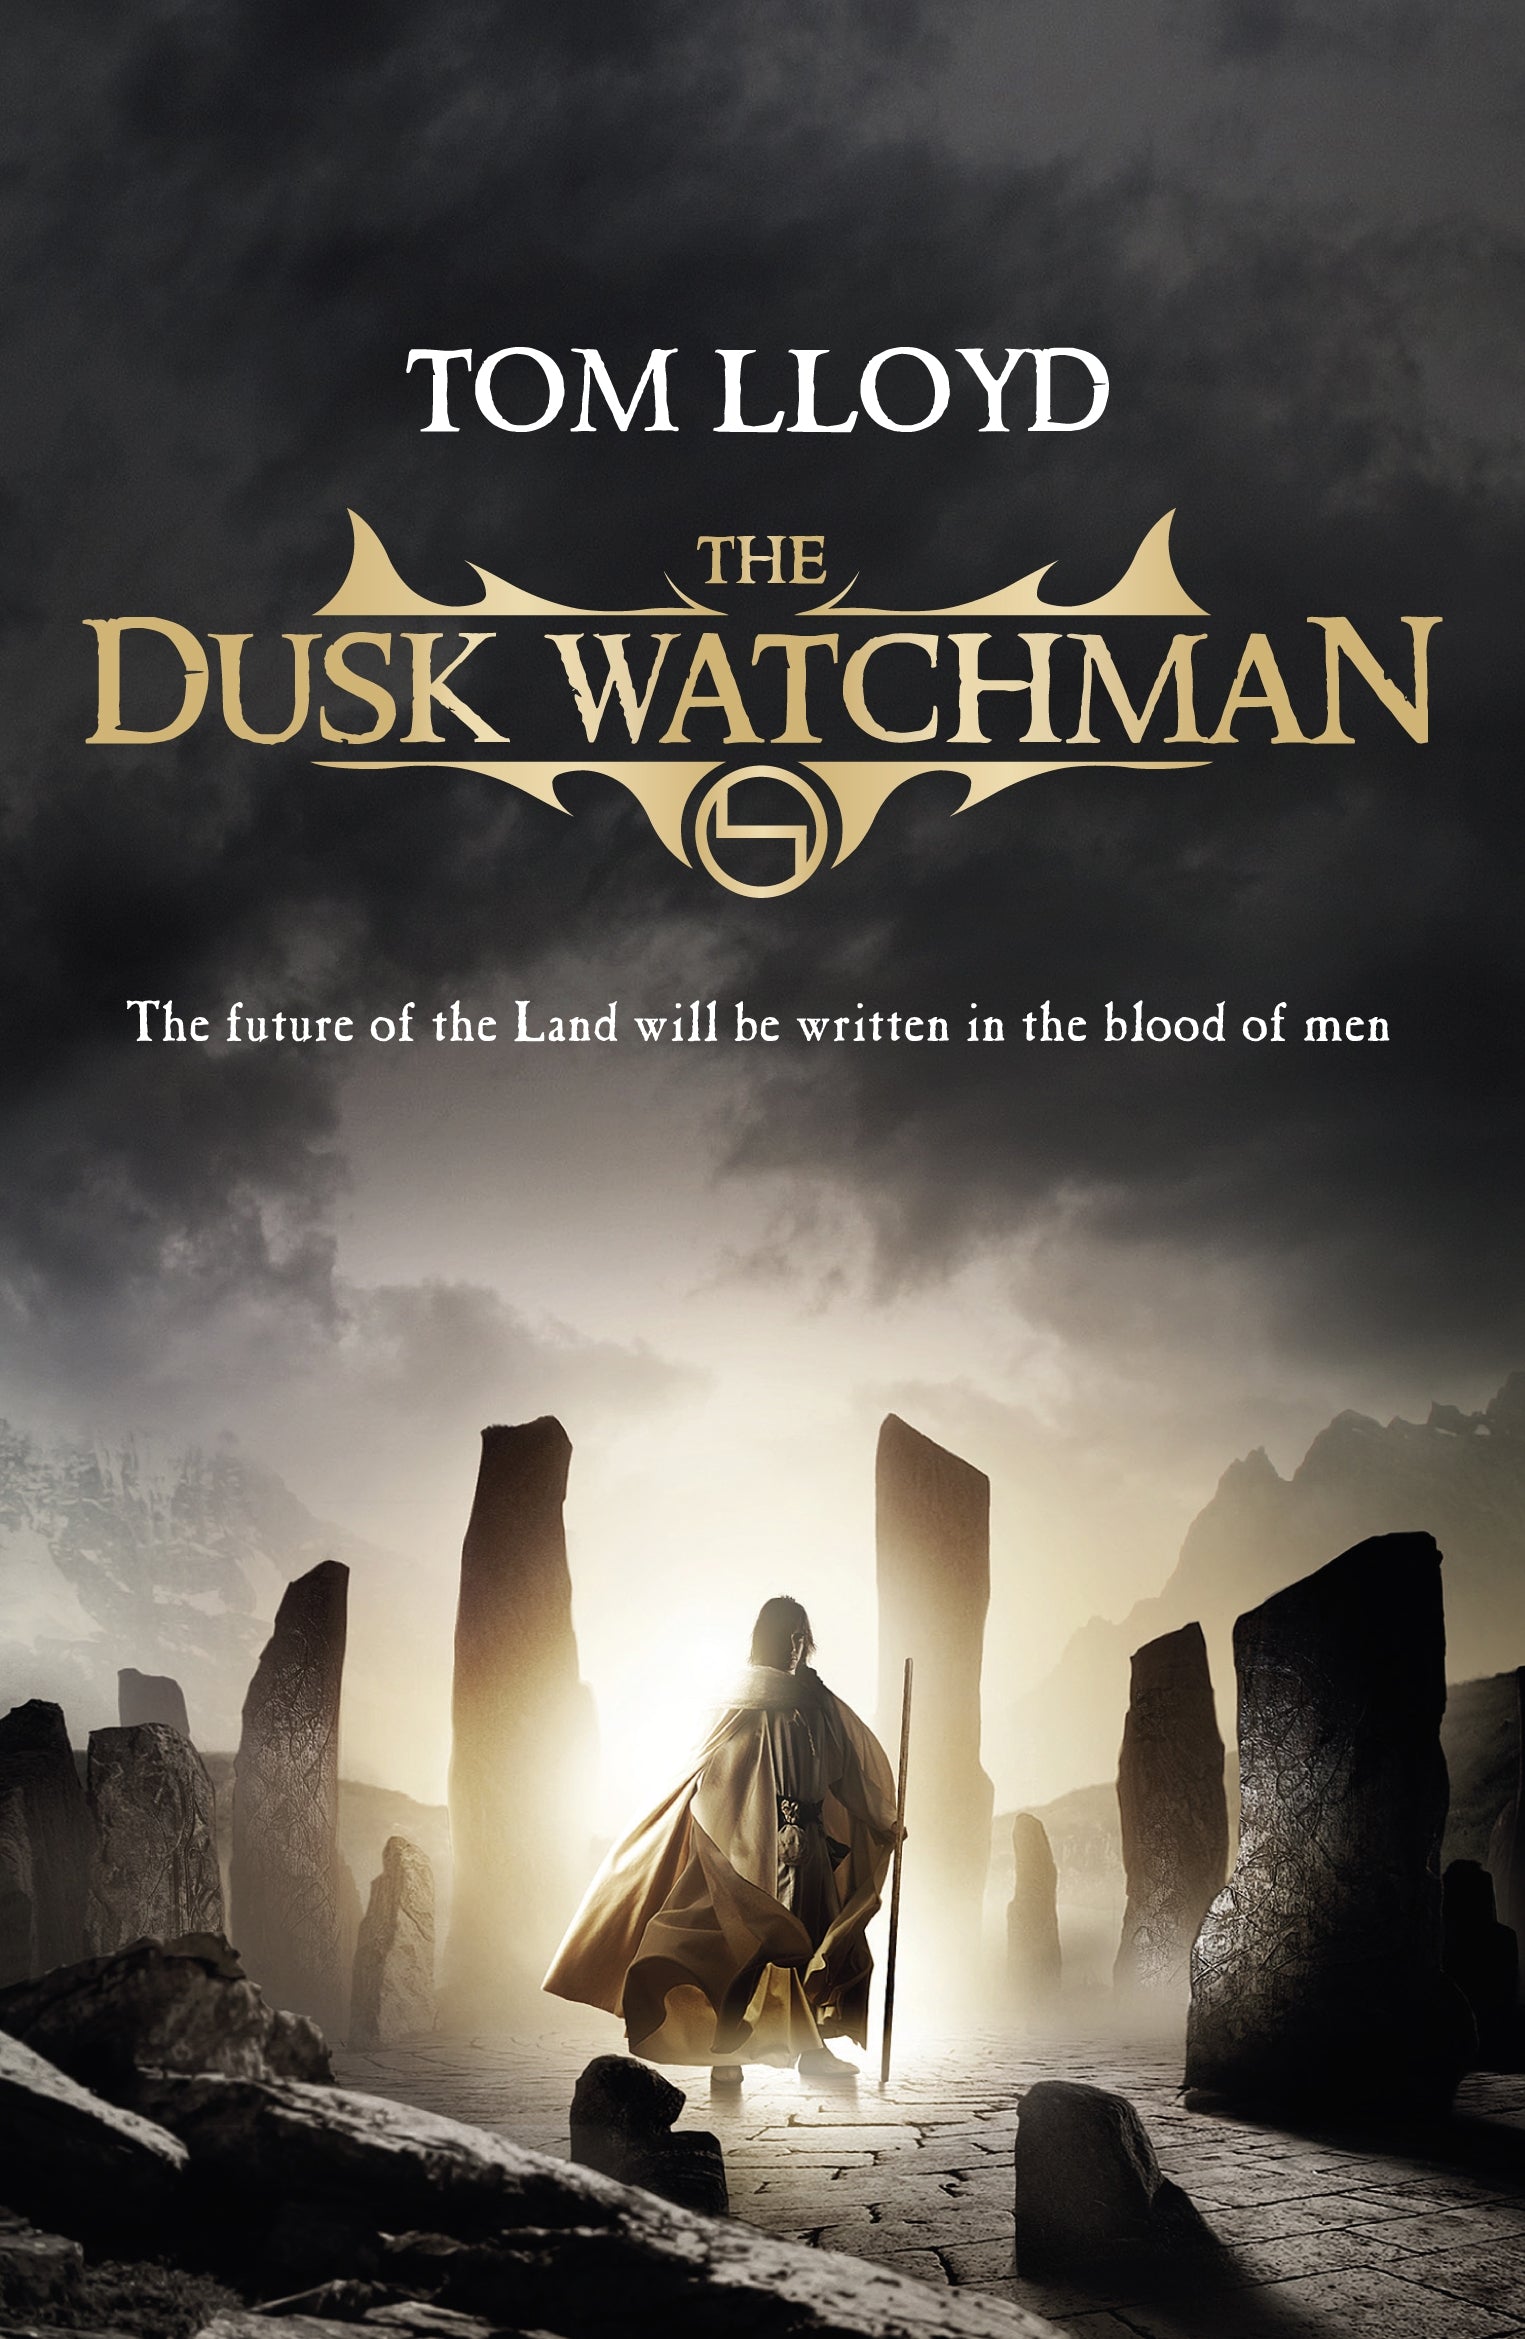 The Dusk Watchman by Tom Lloyd